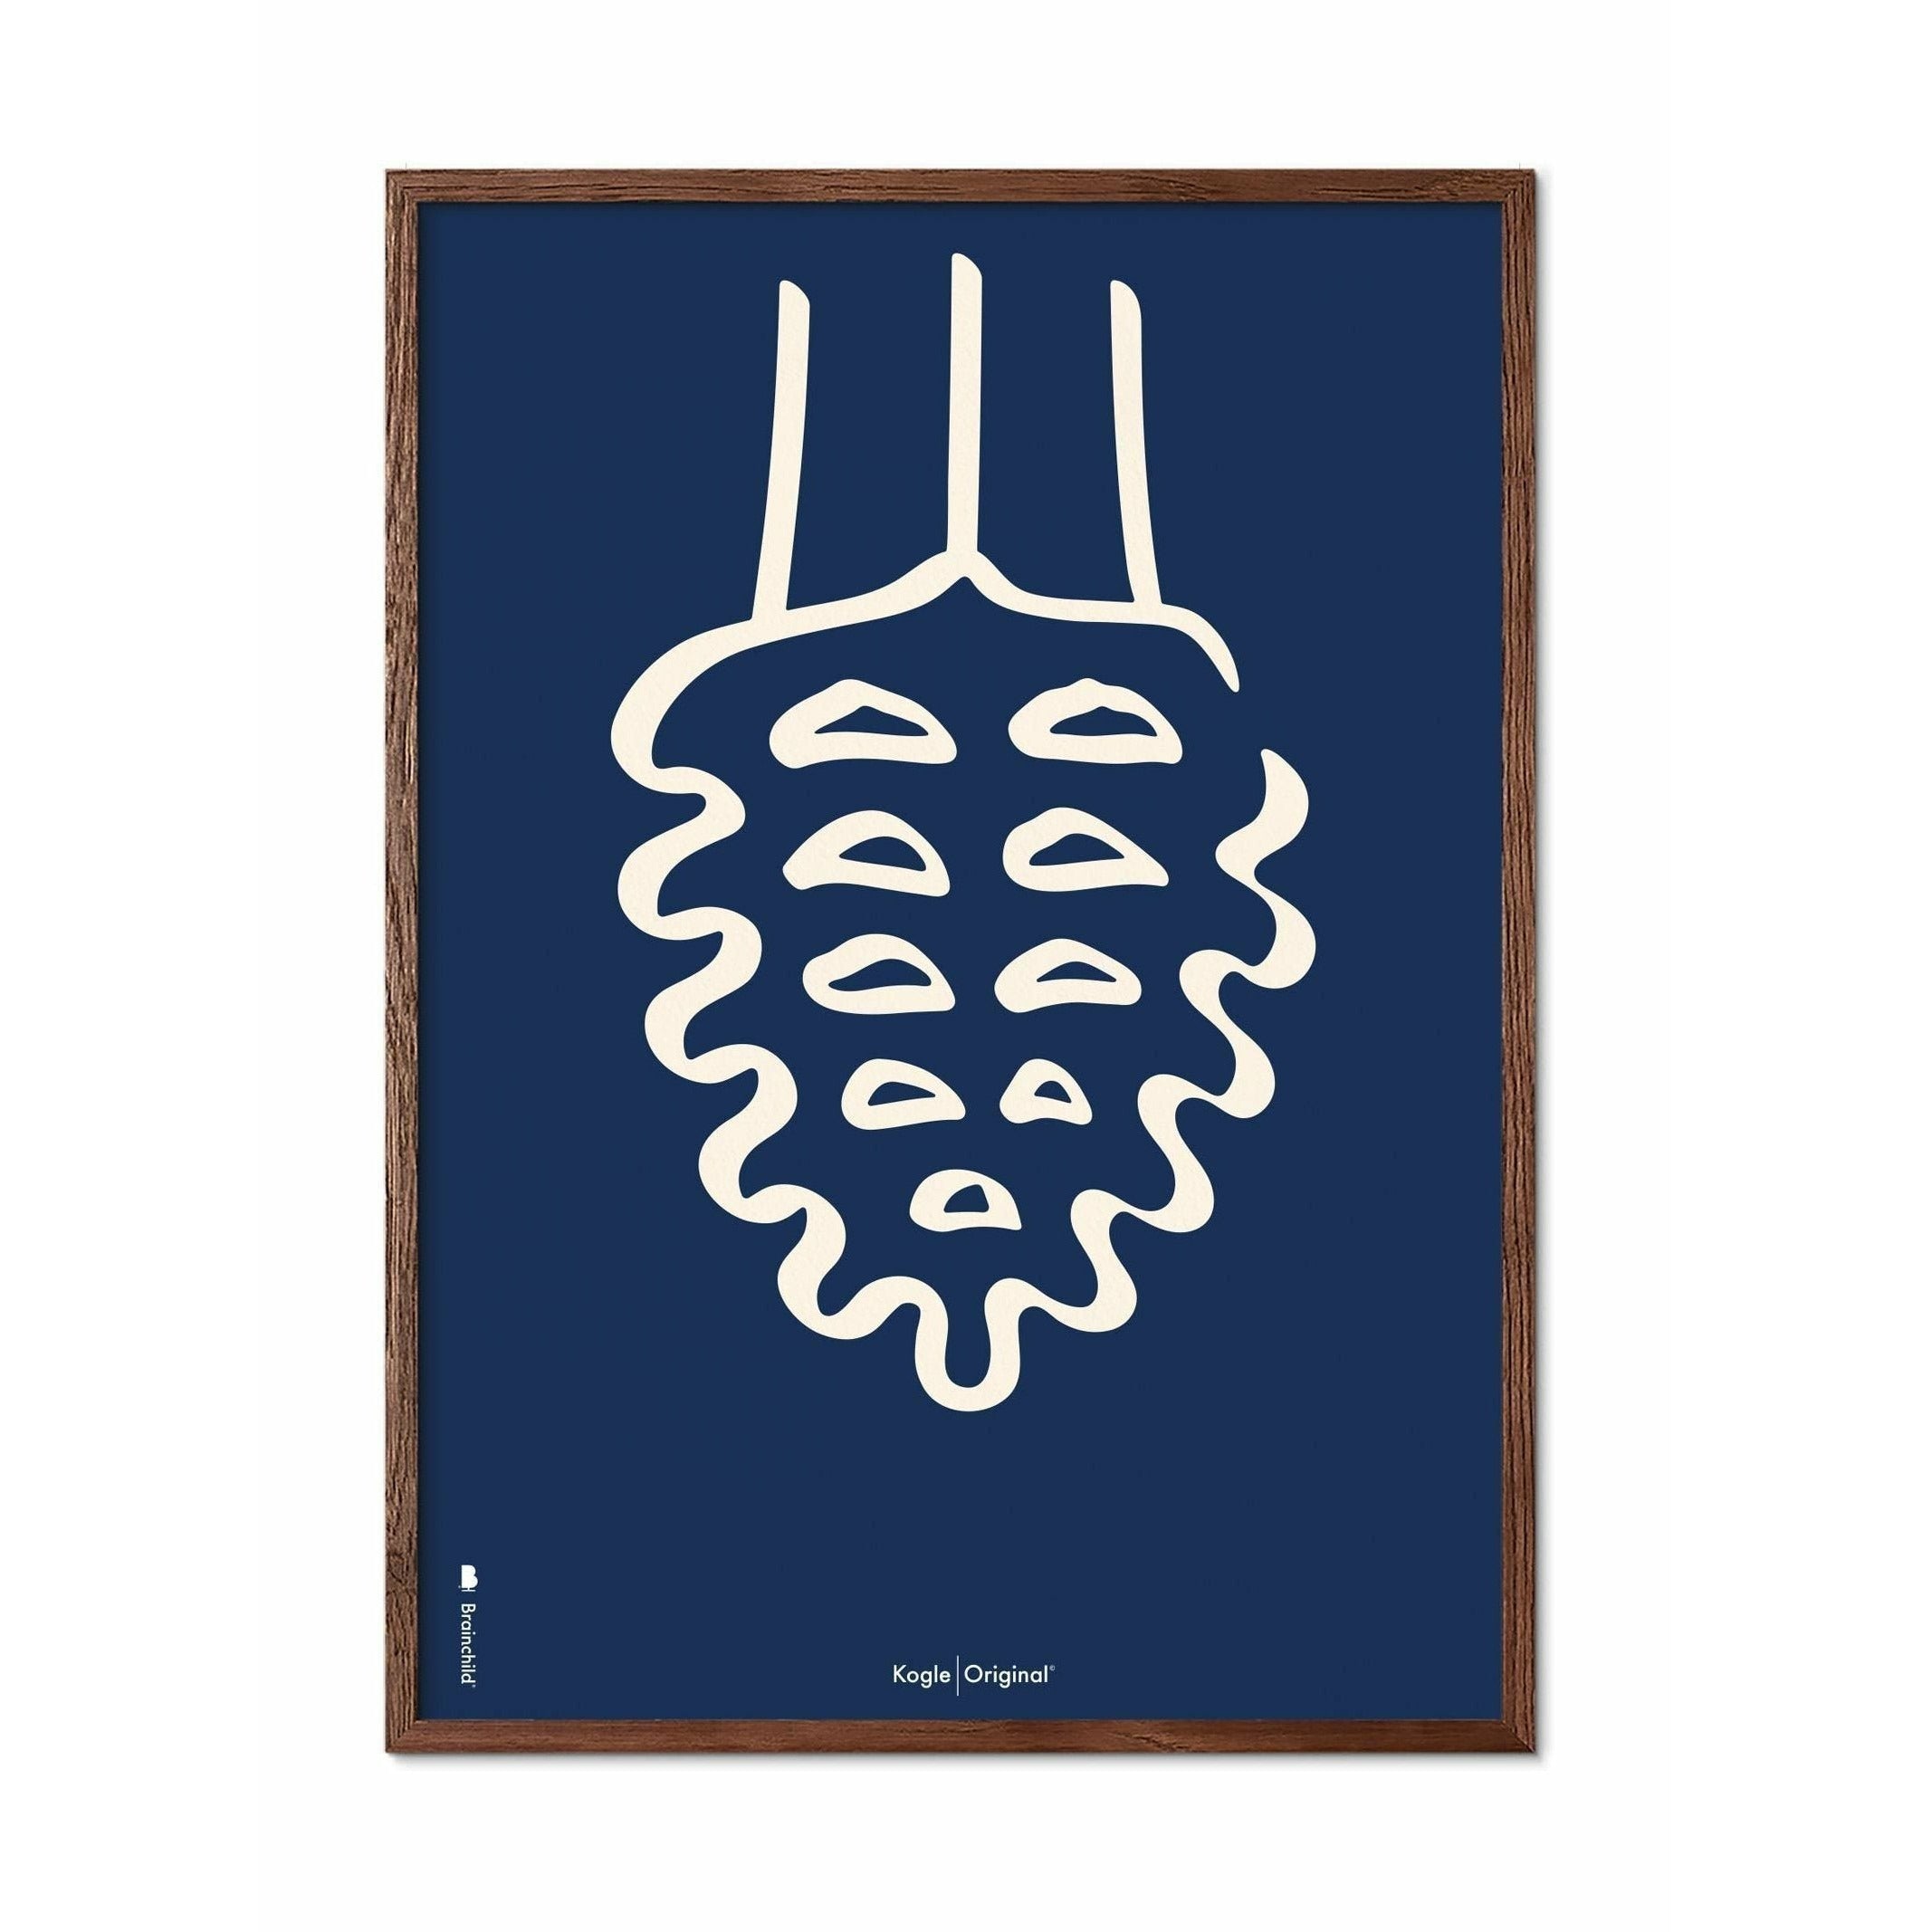 Póster de línea de cono de pino de creación, marco hecho de madera oscura 50x70 cm, fondo azul